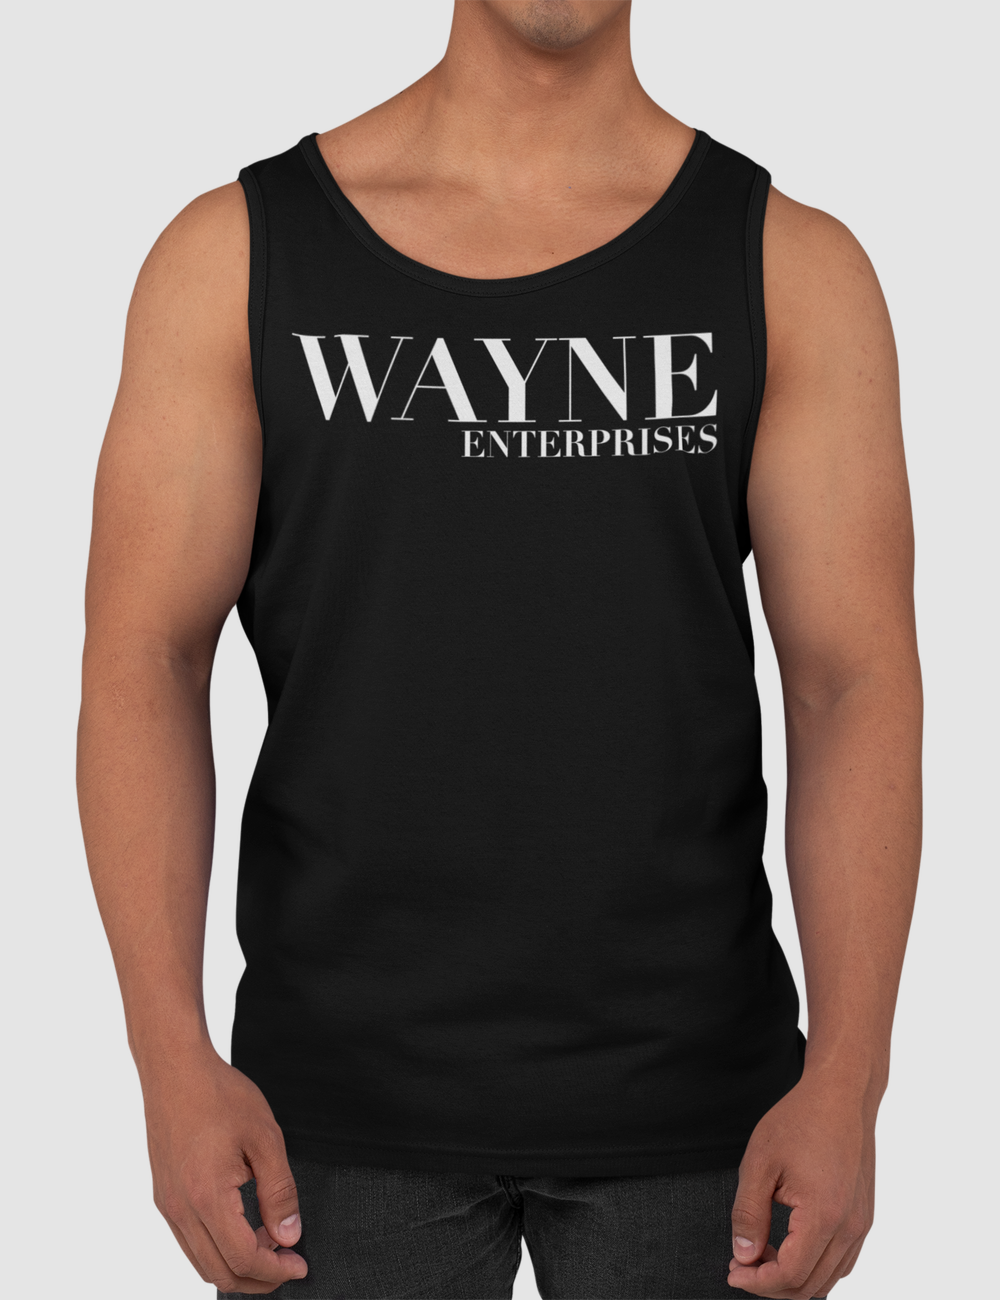 Wayne Enterprises | Men's Classic Tank Top OniTakai